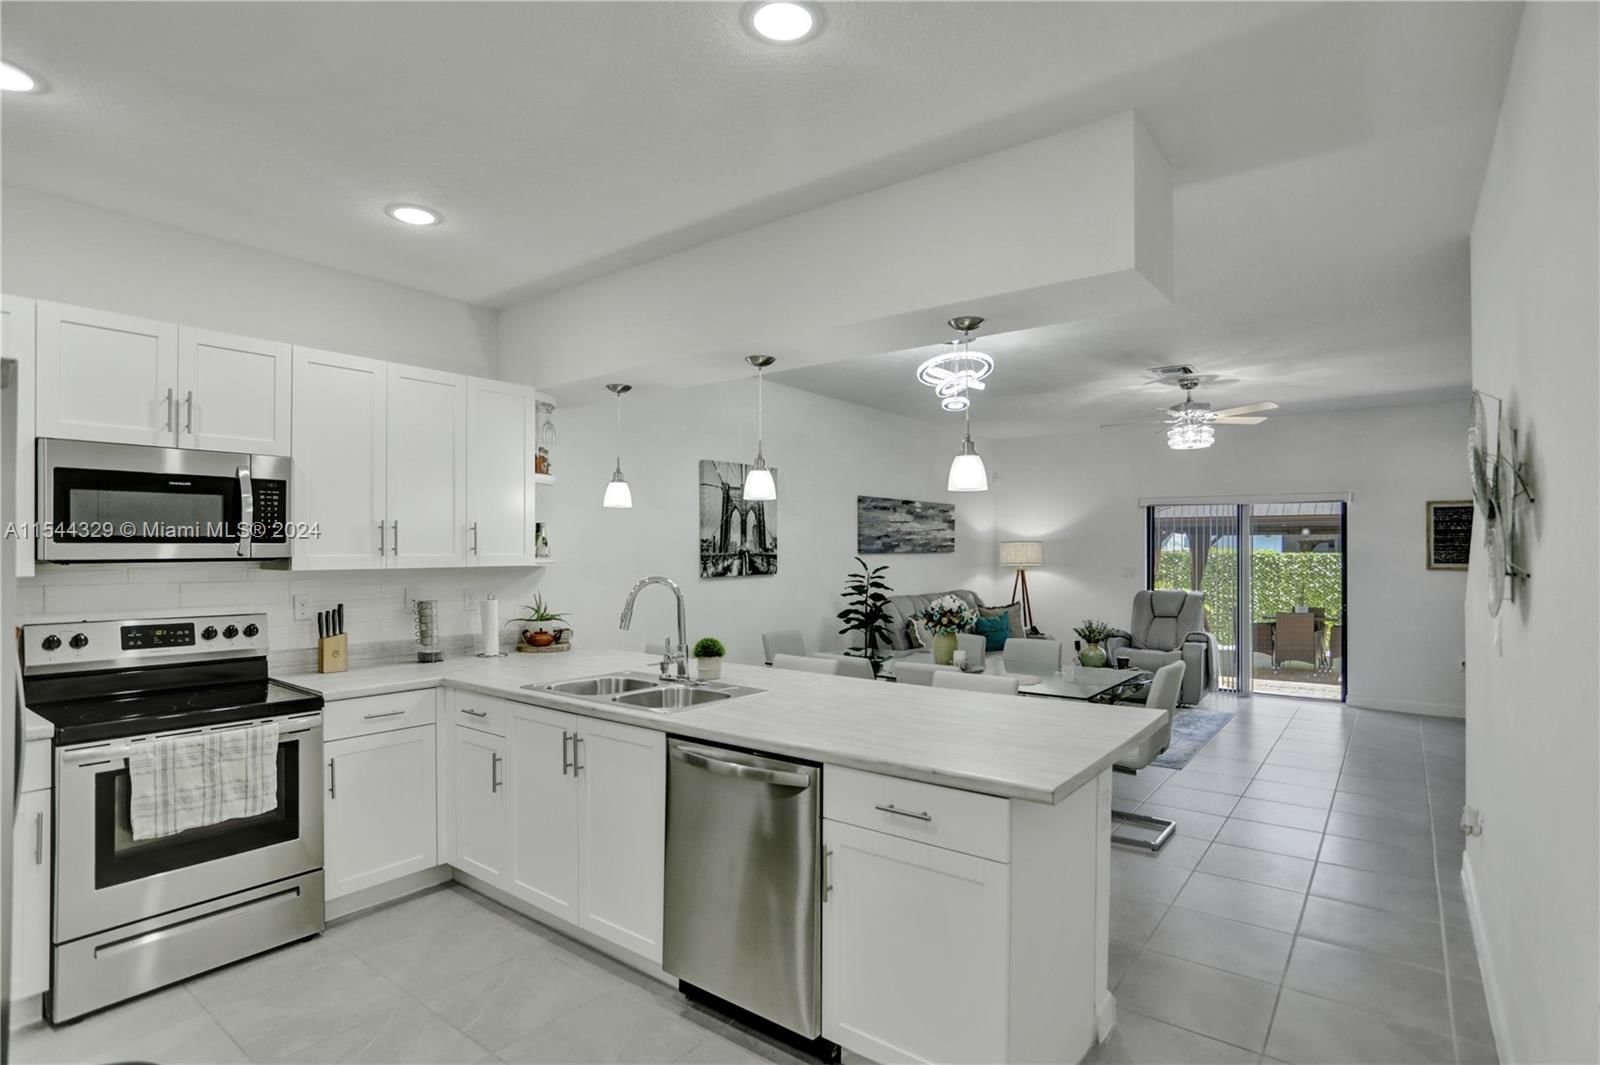 Real estate property located at 23309 111th Ave #23309, Miami-Dade County, MC ESTATES SUBDIVISION, Homestead, FL